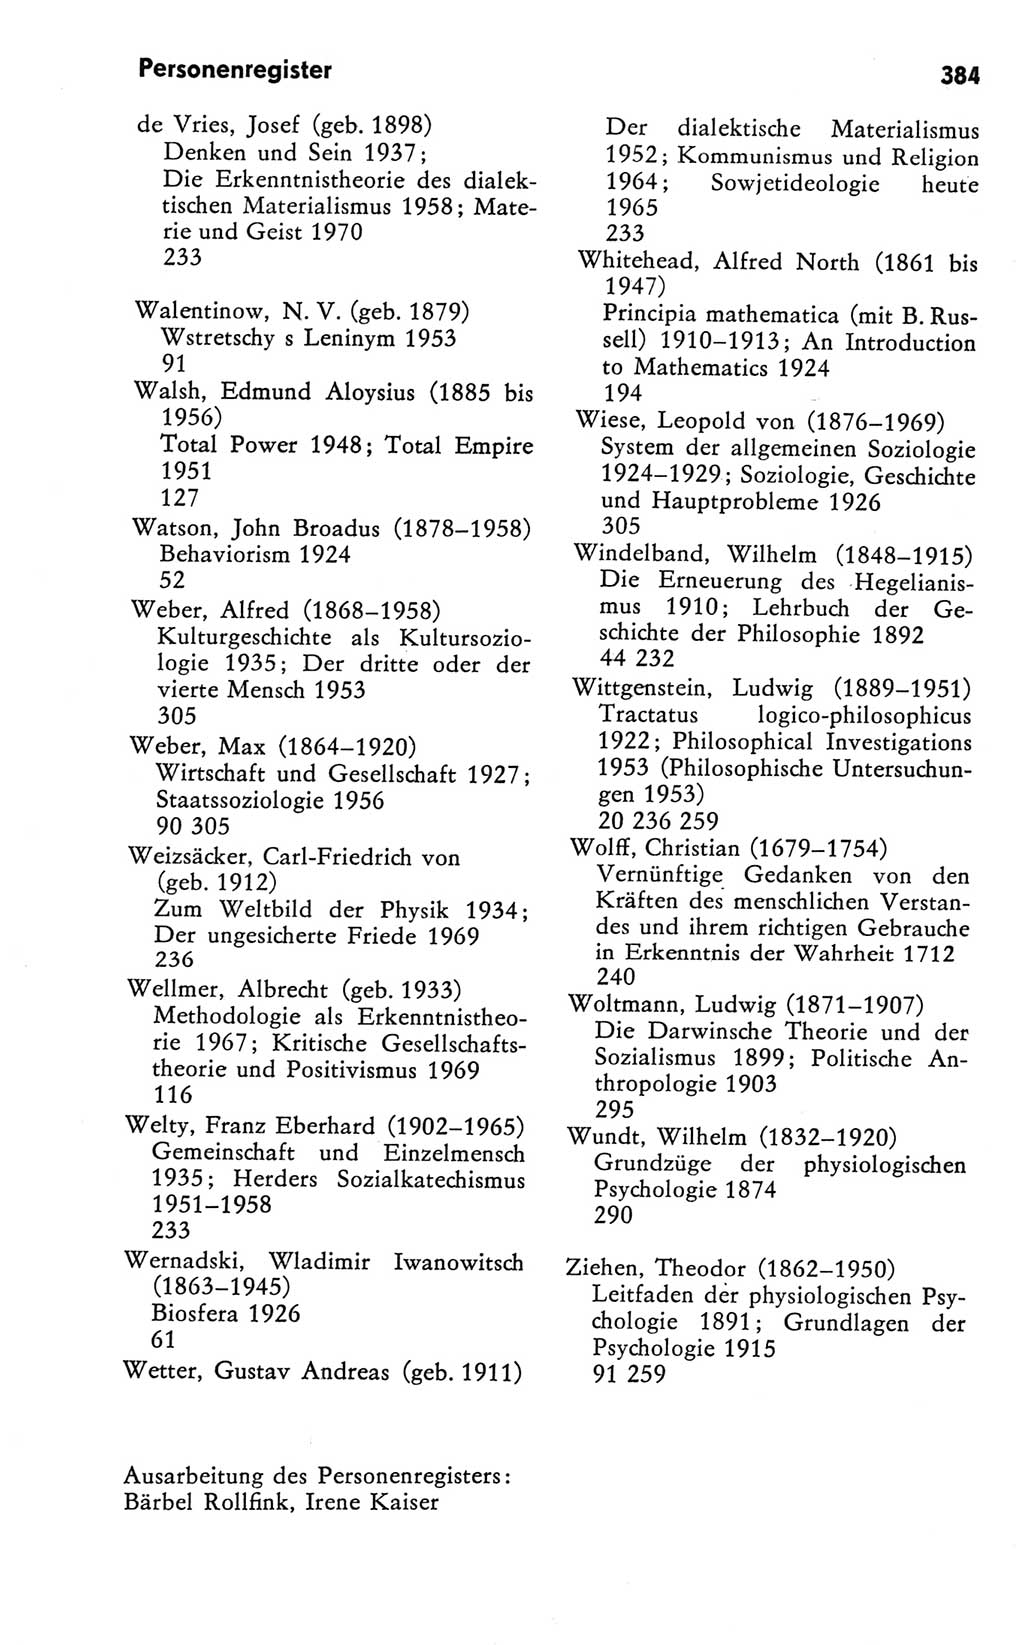 Kleines Wörterbuch der marxistisch-leninistischen Philosophie [Deutsche Demokratische Republik (DDR)] 1981, Seite 384 (Kl. Wb. ML Phil. DDR 1981, S. 384)